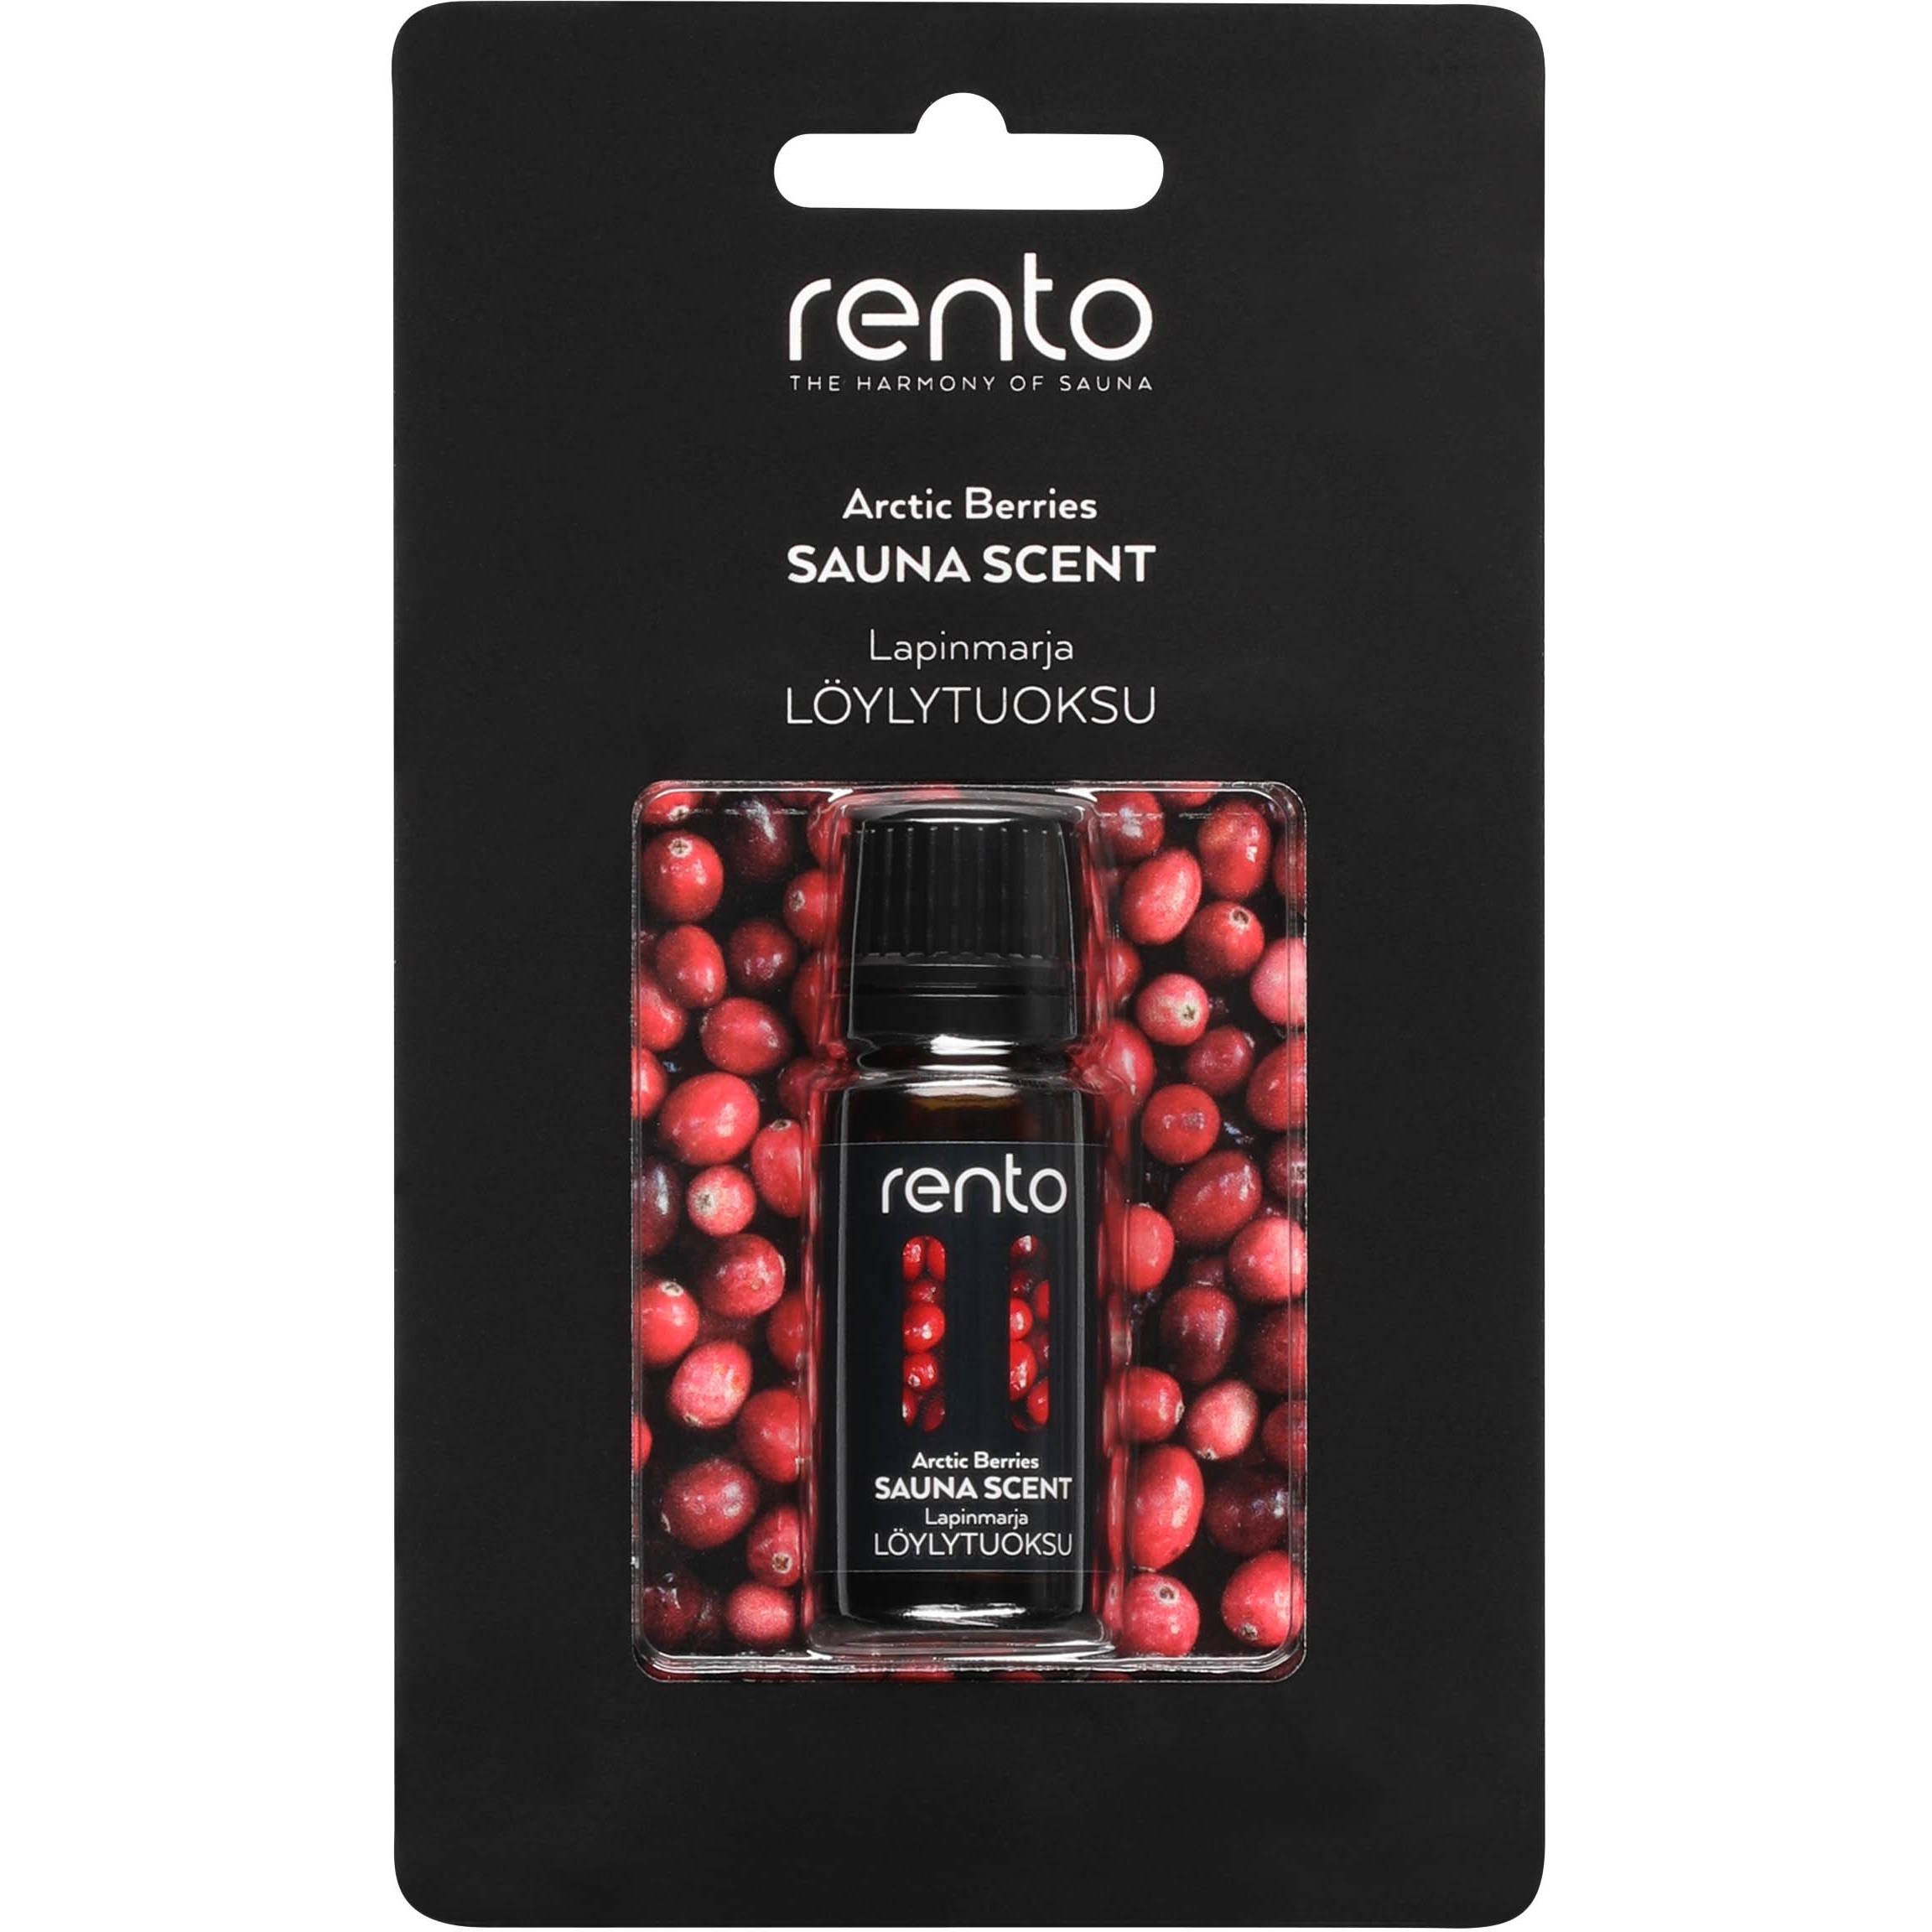 Rento Sauna Scent Arctic Berries 10 ml